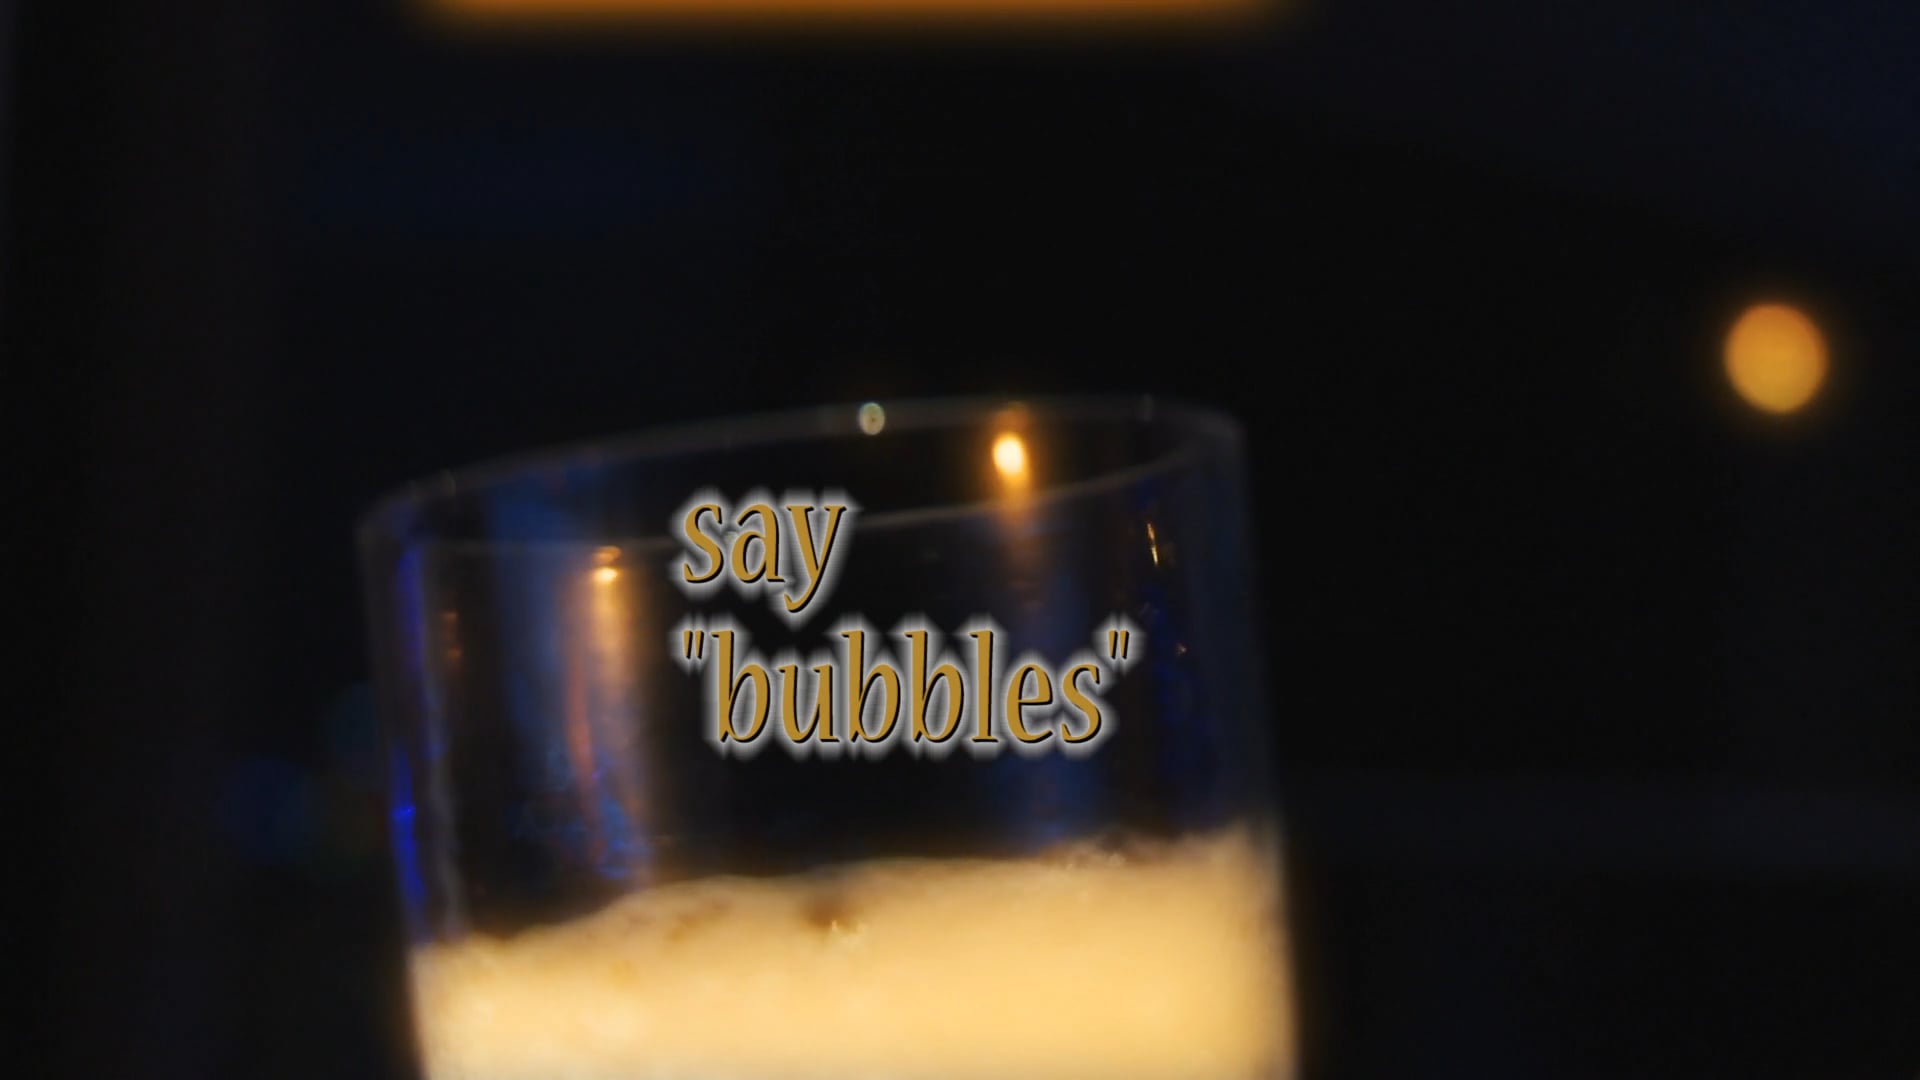 Say "bubbles"